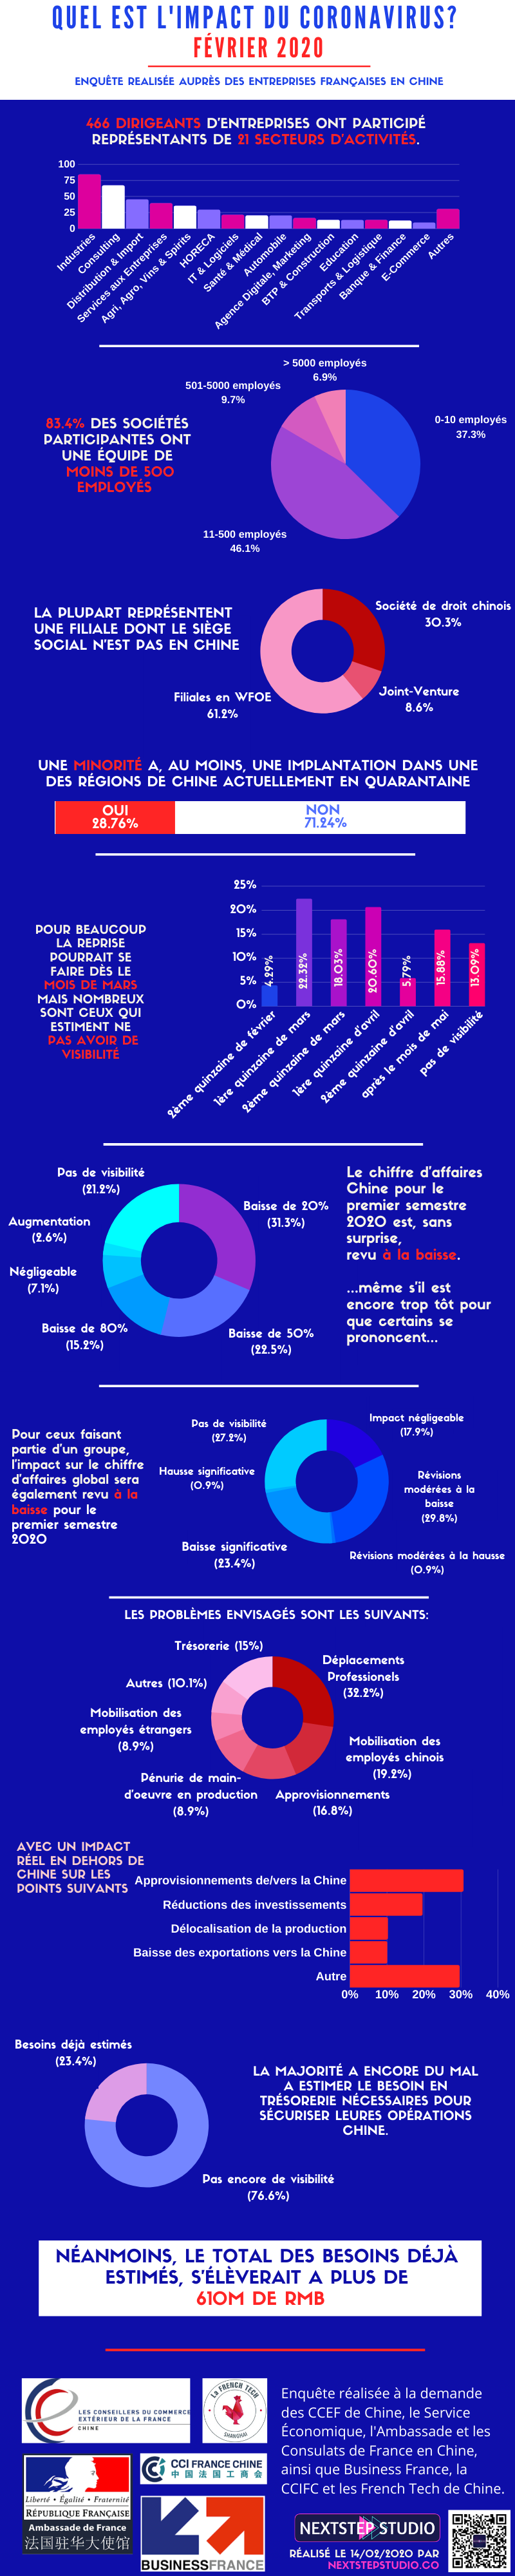 Infographie impact coronavirus sur les entreprises françaises en Chine